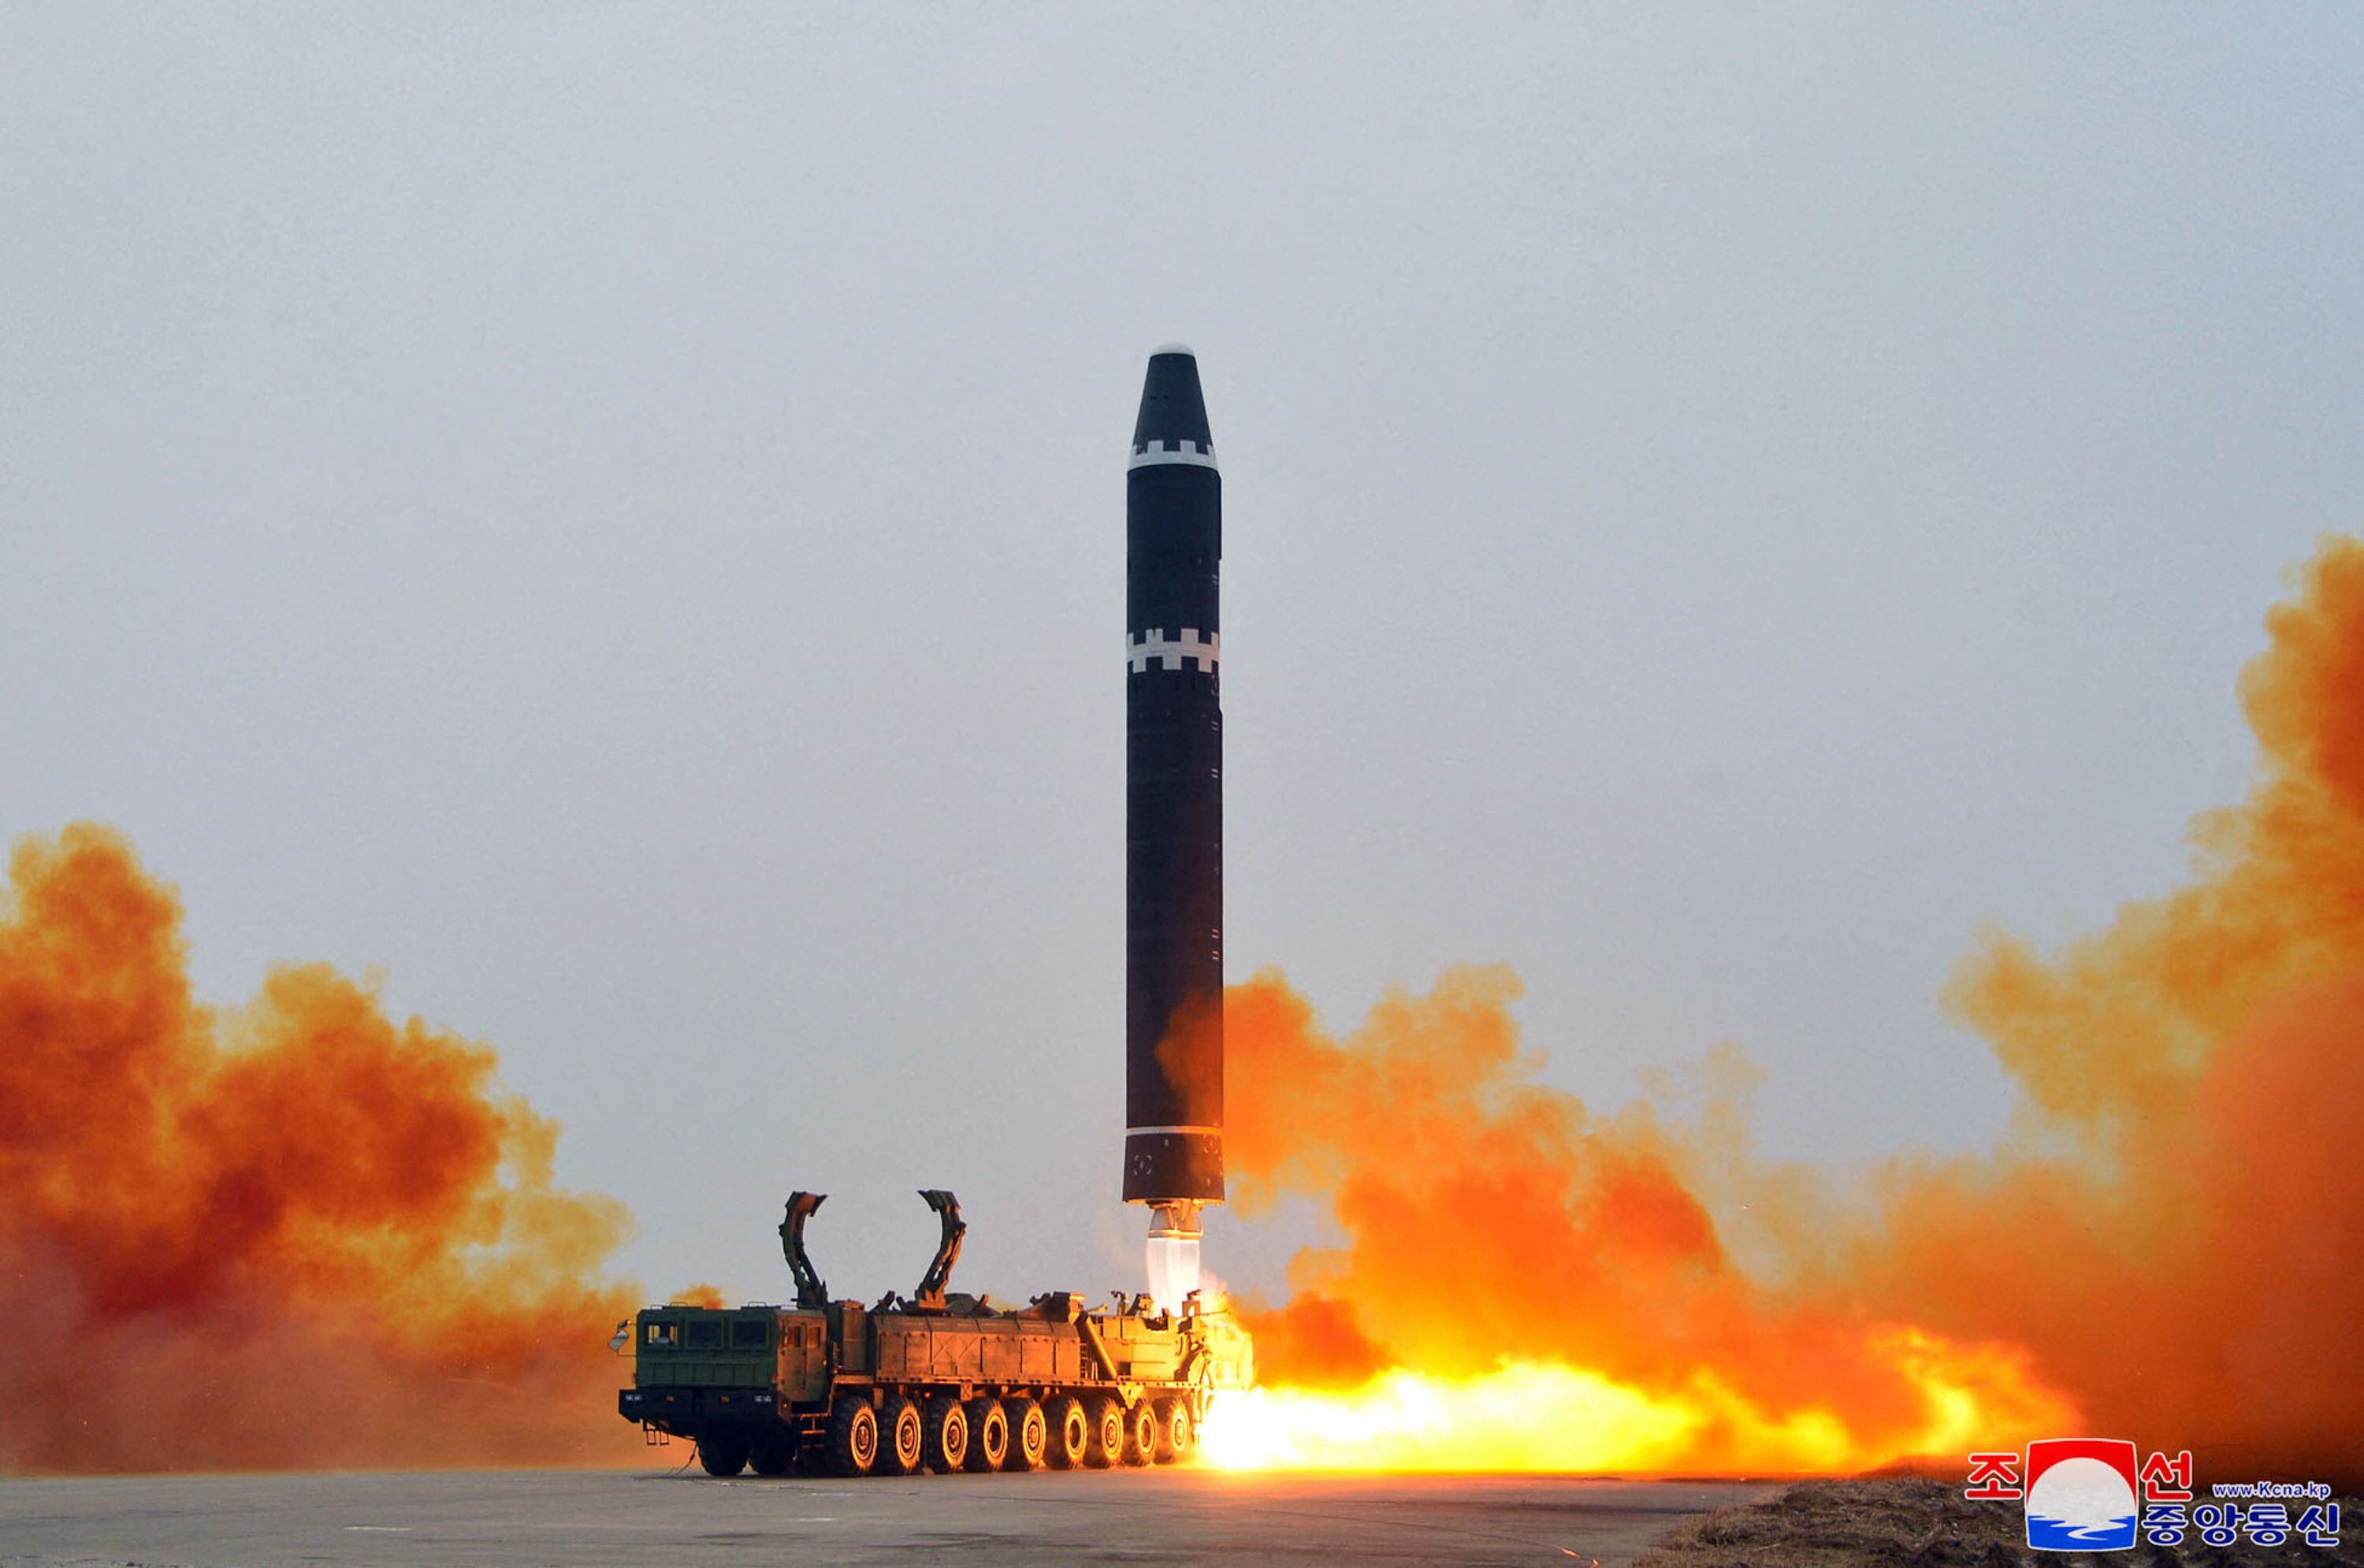 Esta fotografía tomada el 18 de febrero de 2023 muestra el lanzamiento de prueba del misil balístico intercontinental (ICBM) Hwasong-15, en el Aeropuerto Internacional de Pyongyang, Corea del Norte. (Foto de STRINGER / KCNA VIA KNS / AFP).